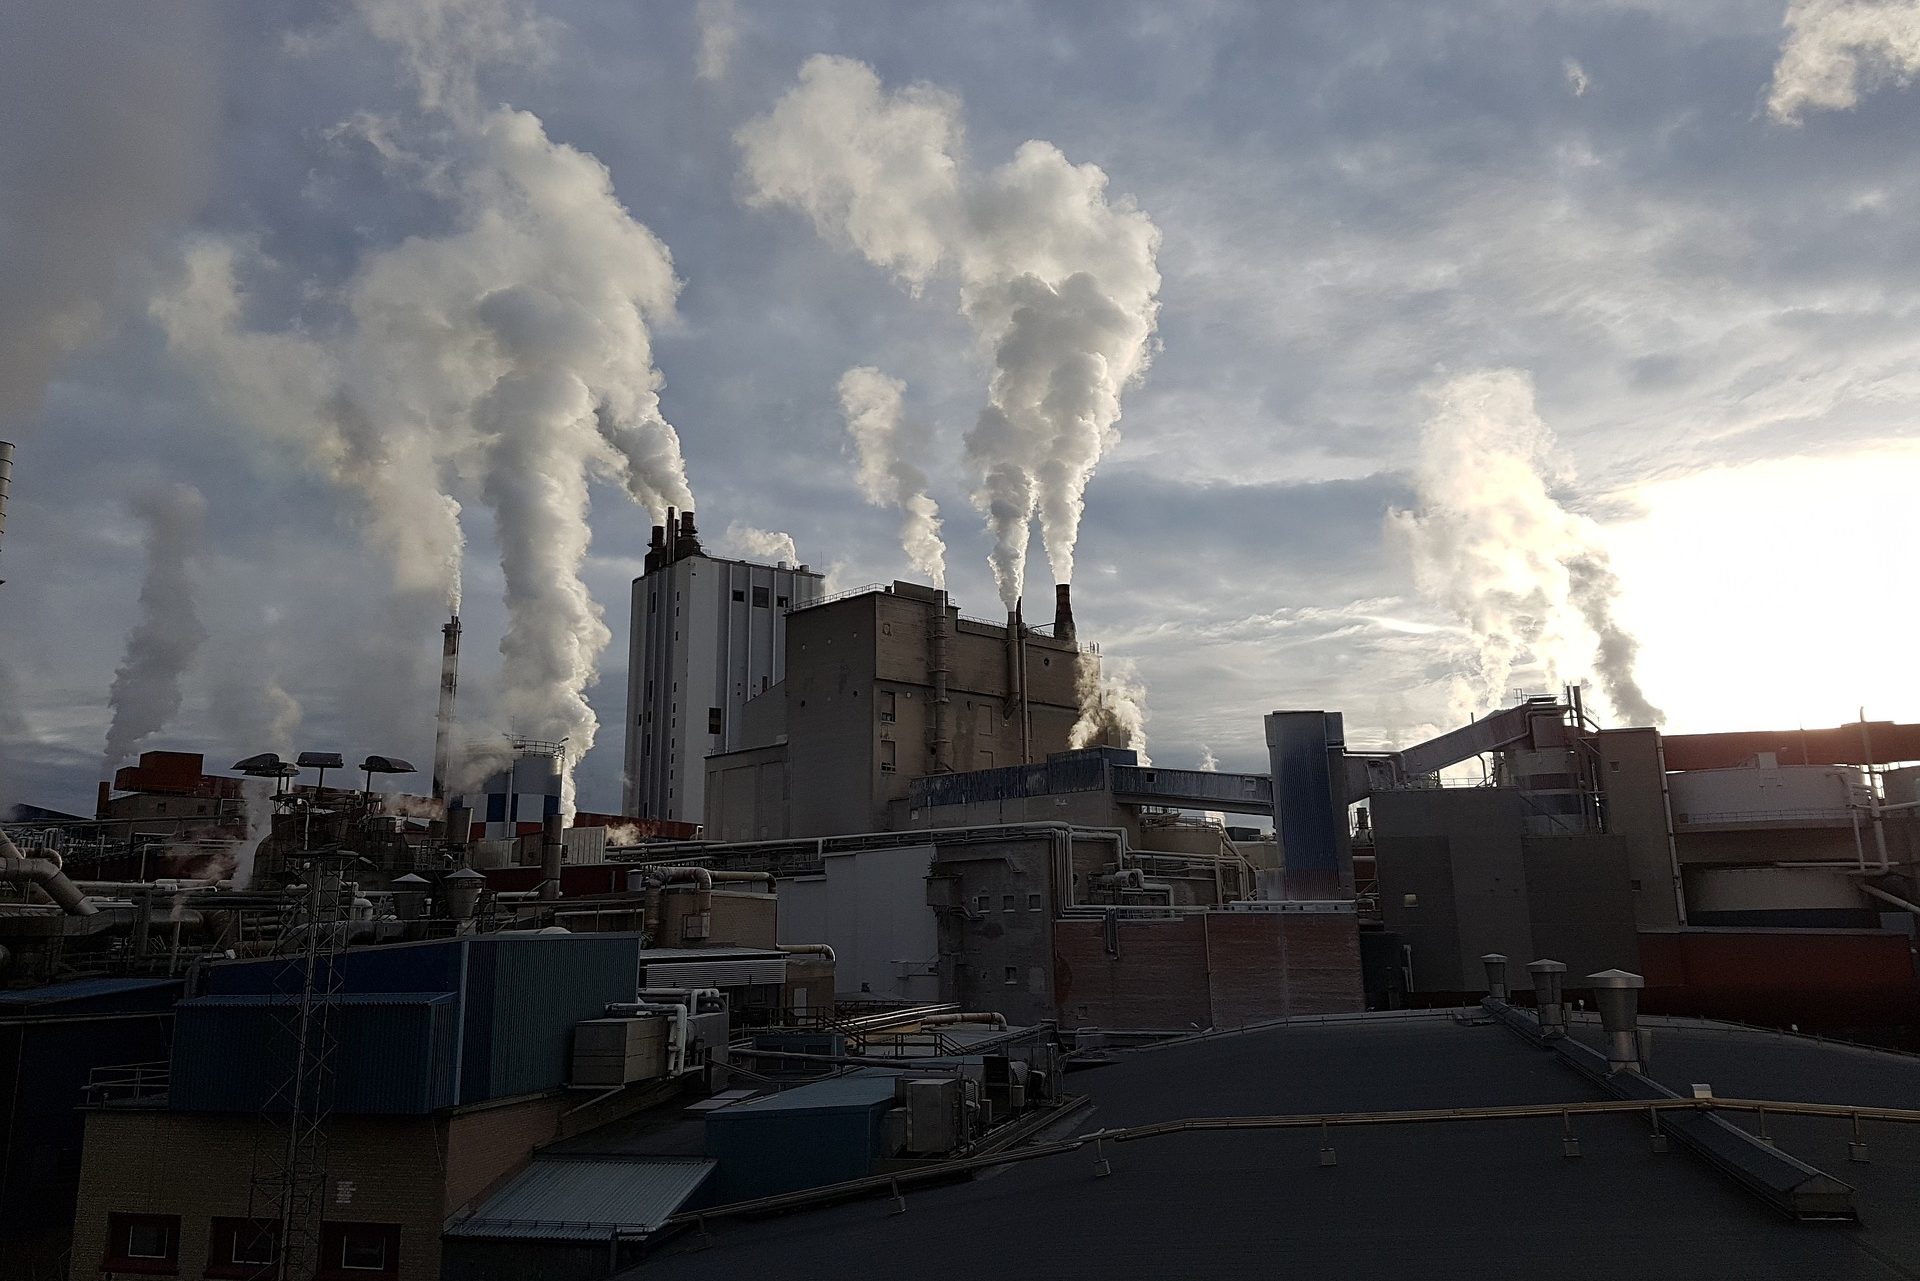 Chaminés de complexo de fábricas lançando grande volume de fumaça branca poluente na atmosfera (Foto: KarinKarin/Pixabay)